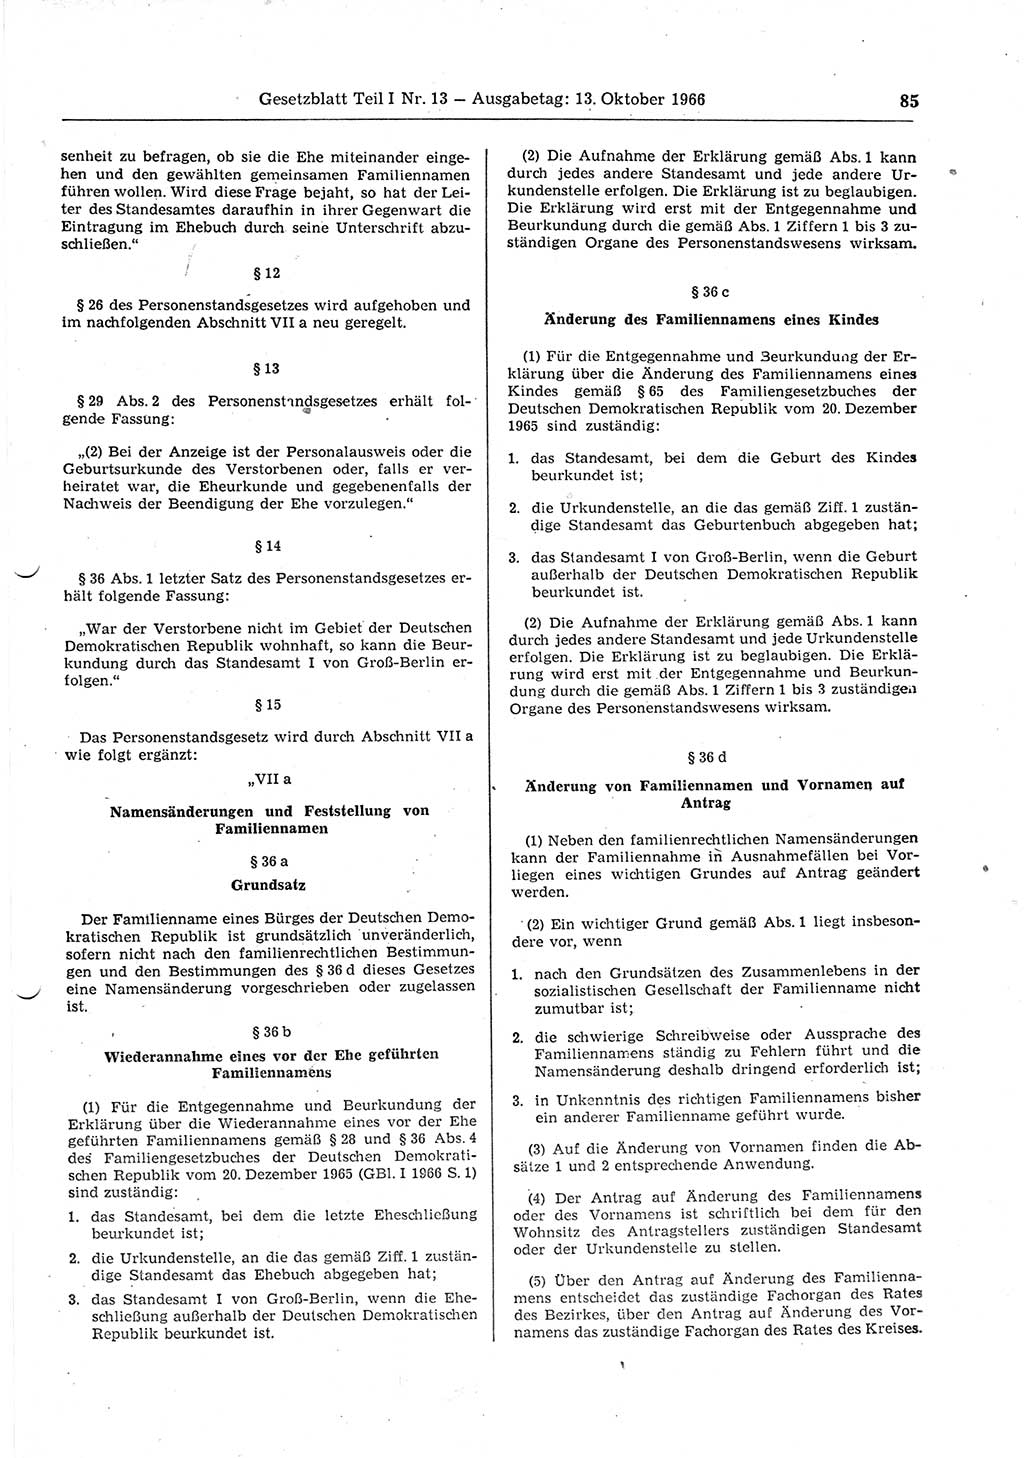 Gesetzblatt (GBl.) der Deutschen Demokratischen Republik (DDR) Teil Ⅰ 1966, Seite 85 (GBl. DDR Ⅰ 1966, S. 85)